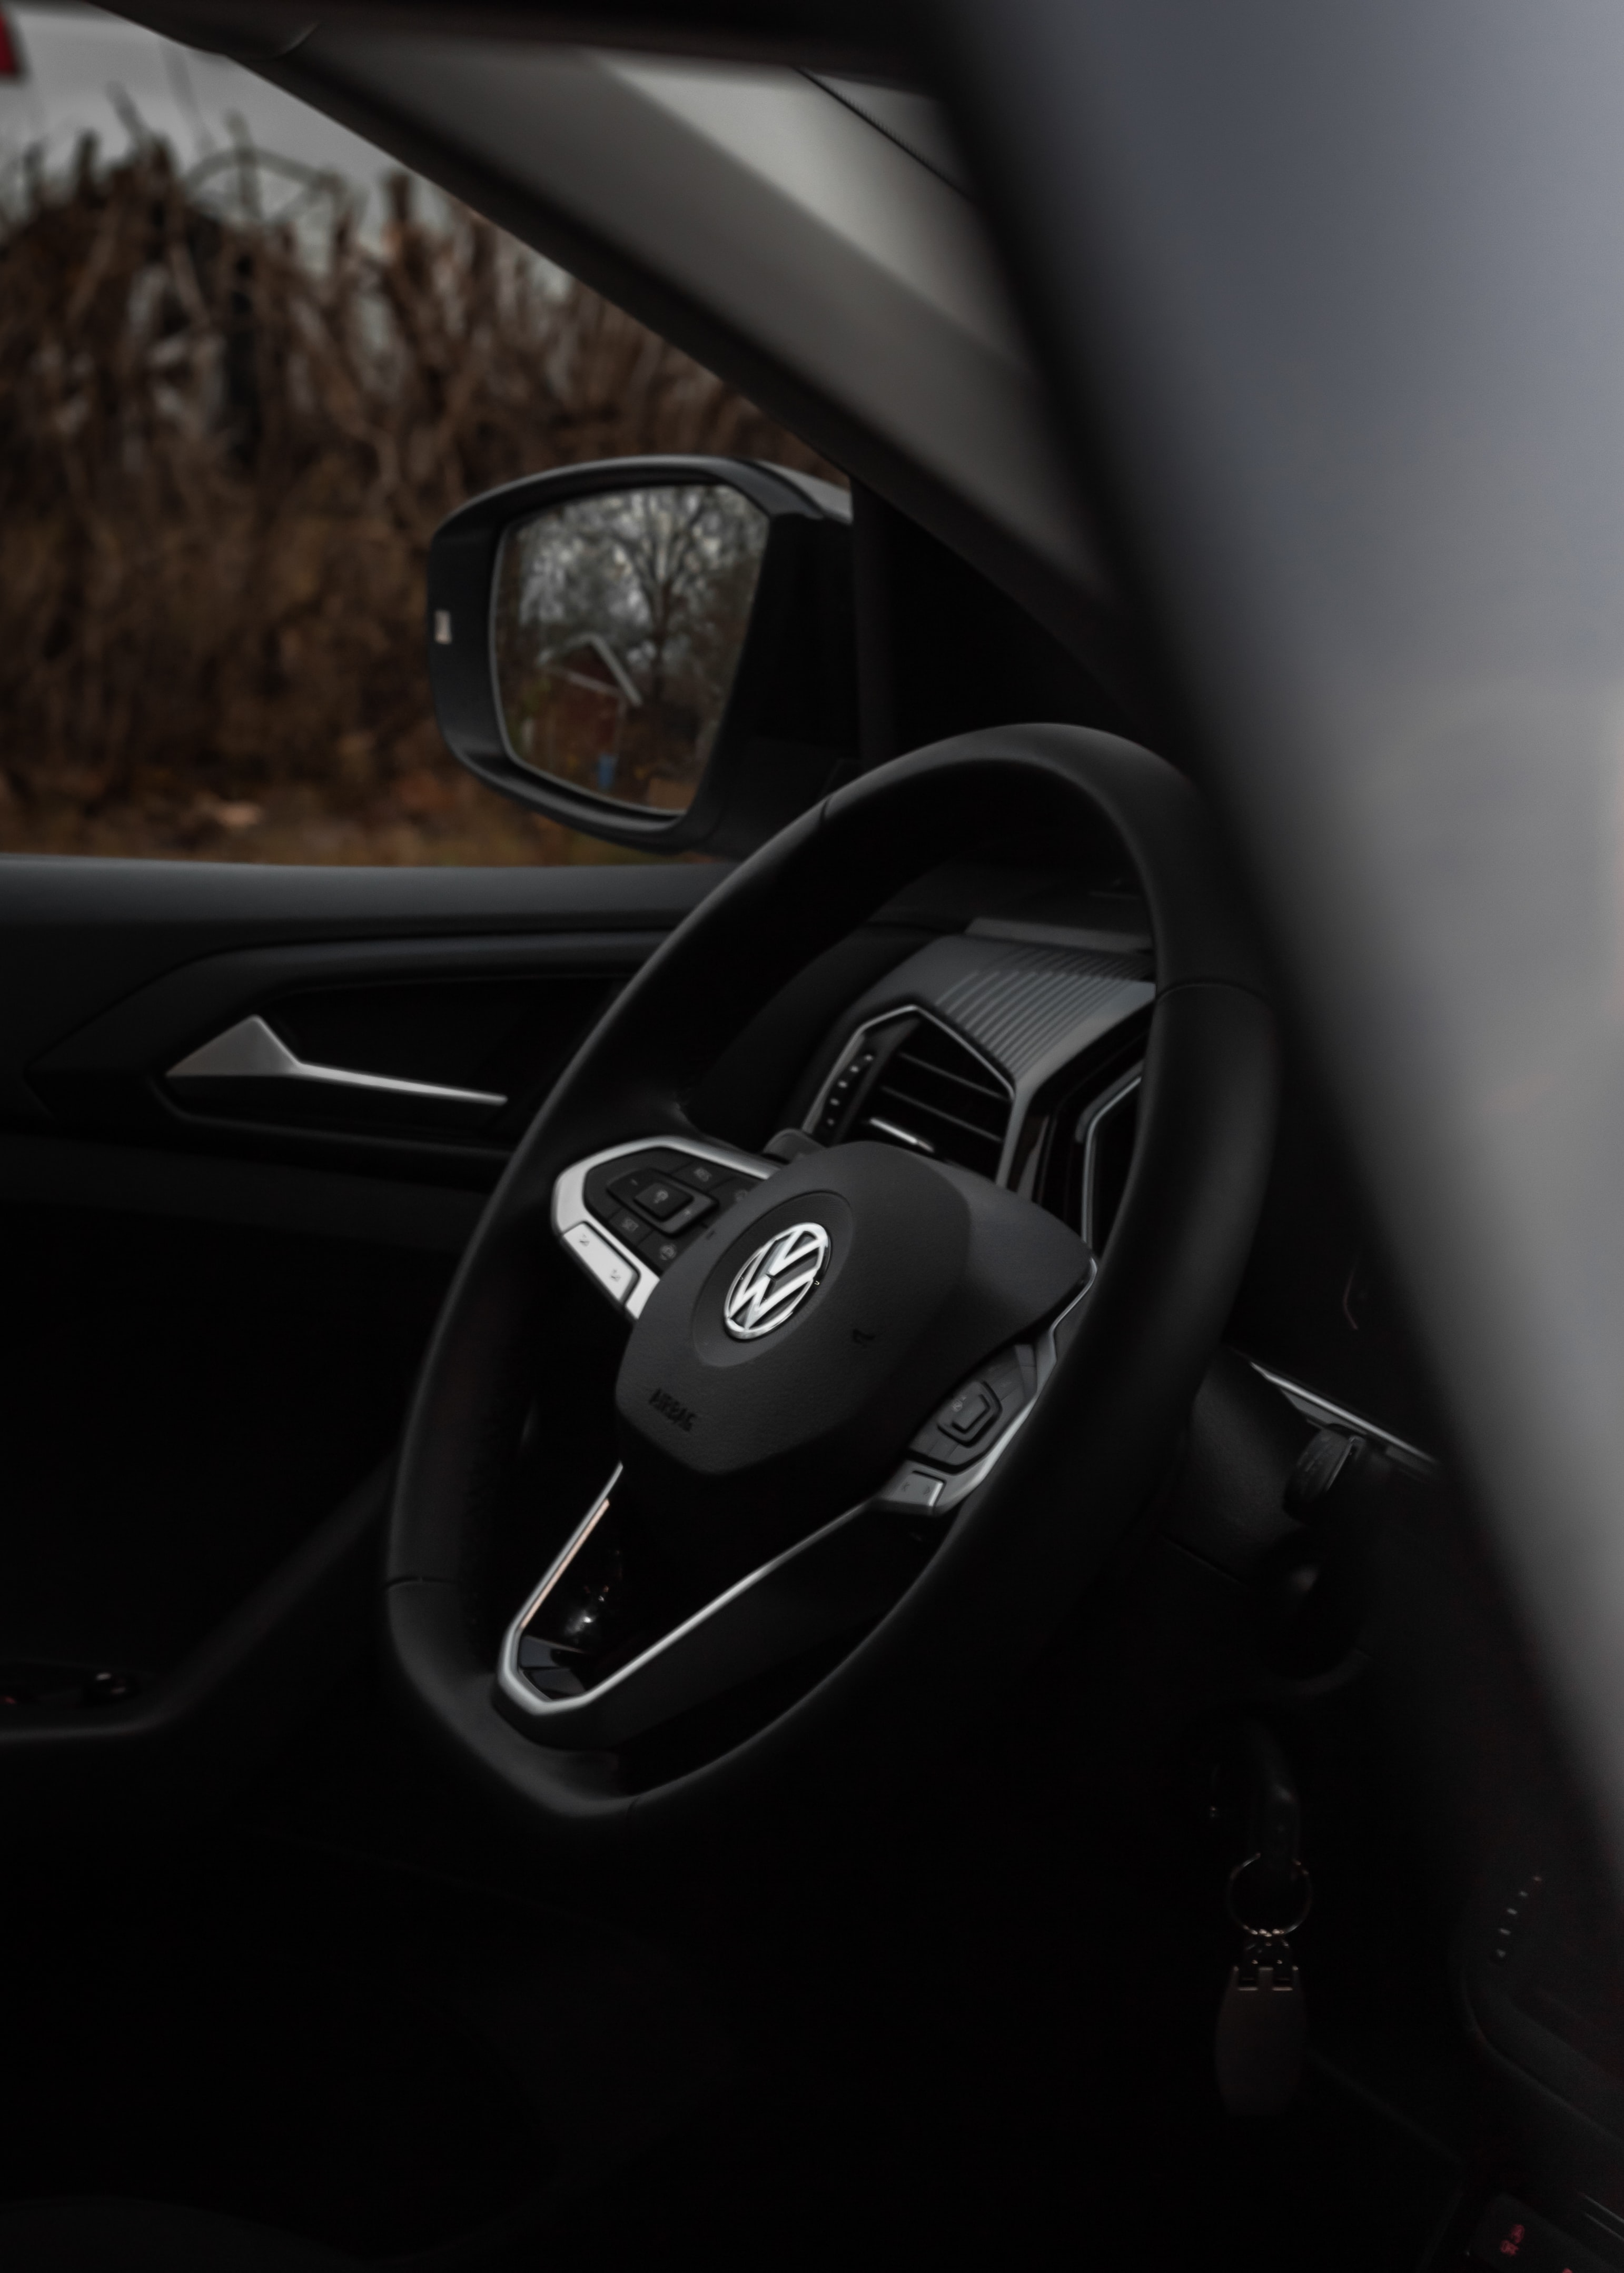 volkswagen, rudder, steering wheel, black, cars, car wallpaper for mobile